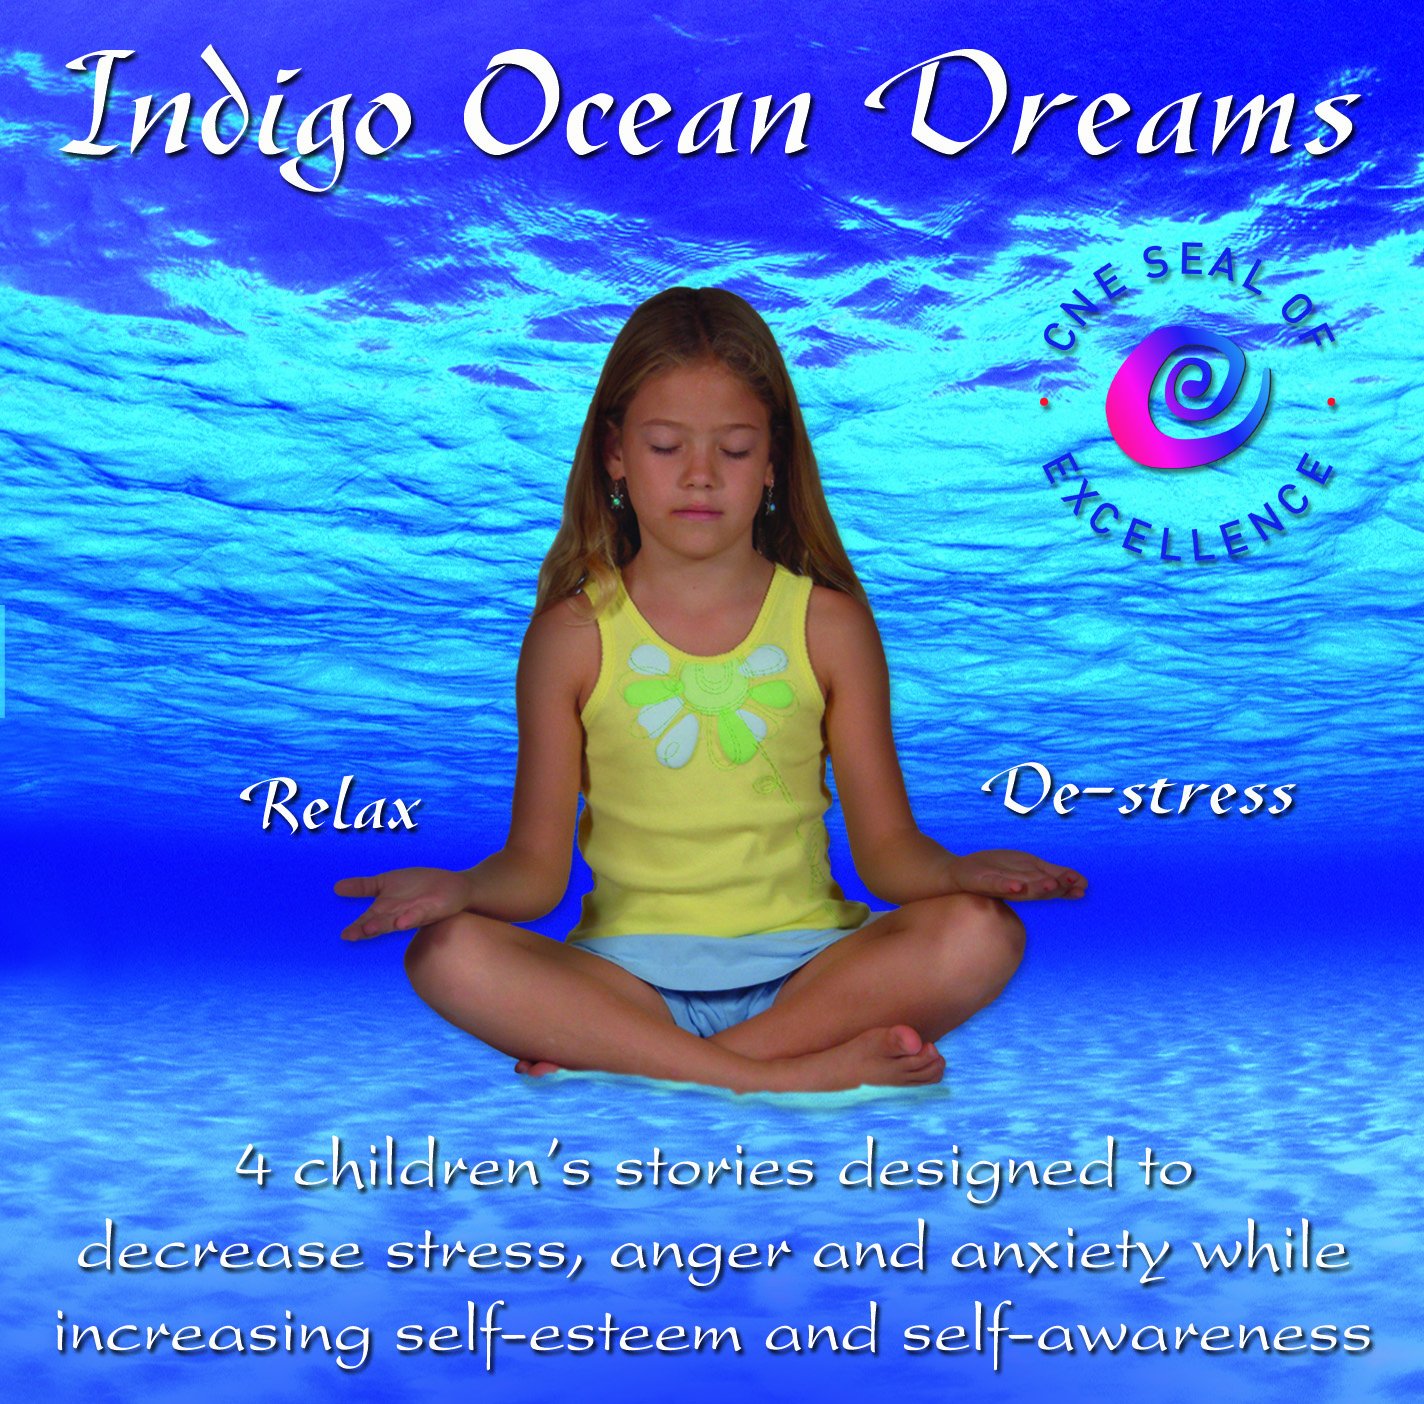 Мечты Indigo